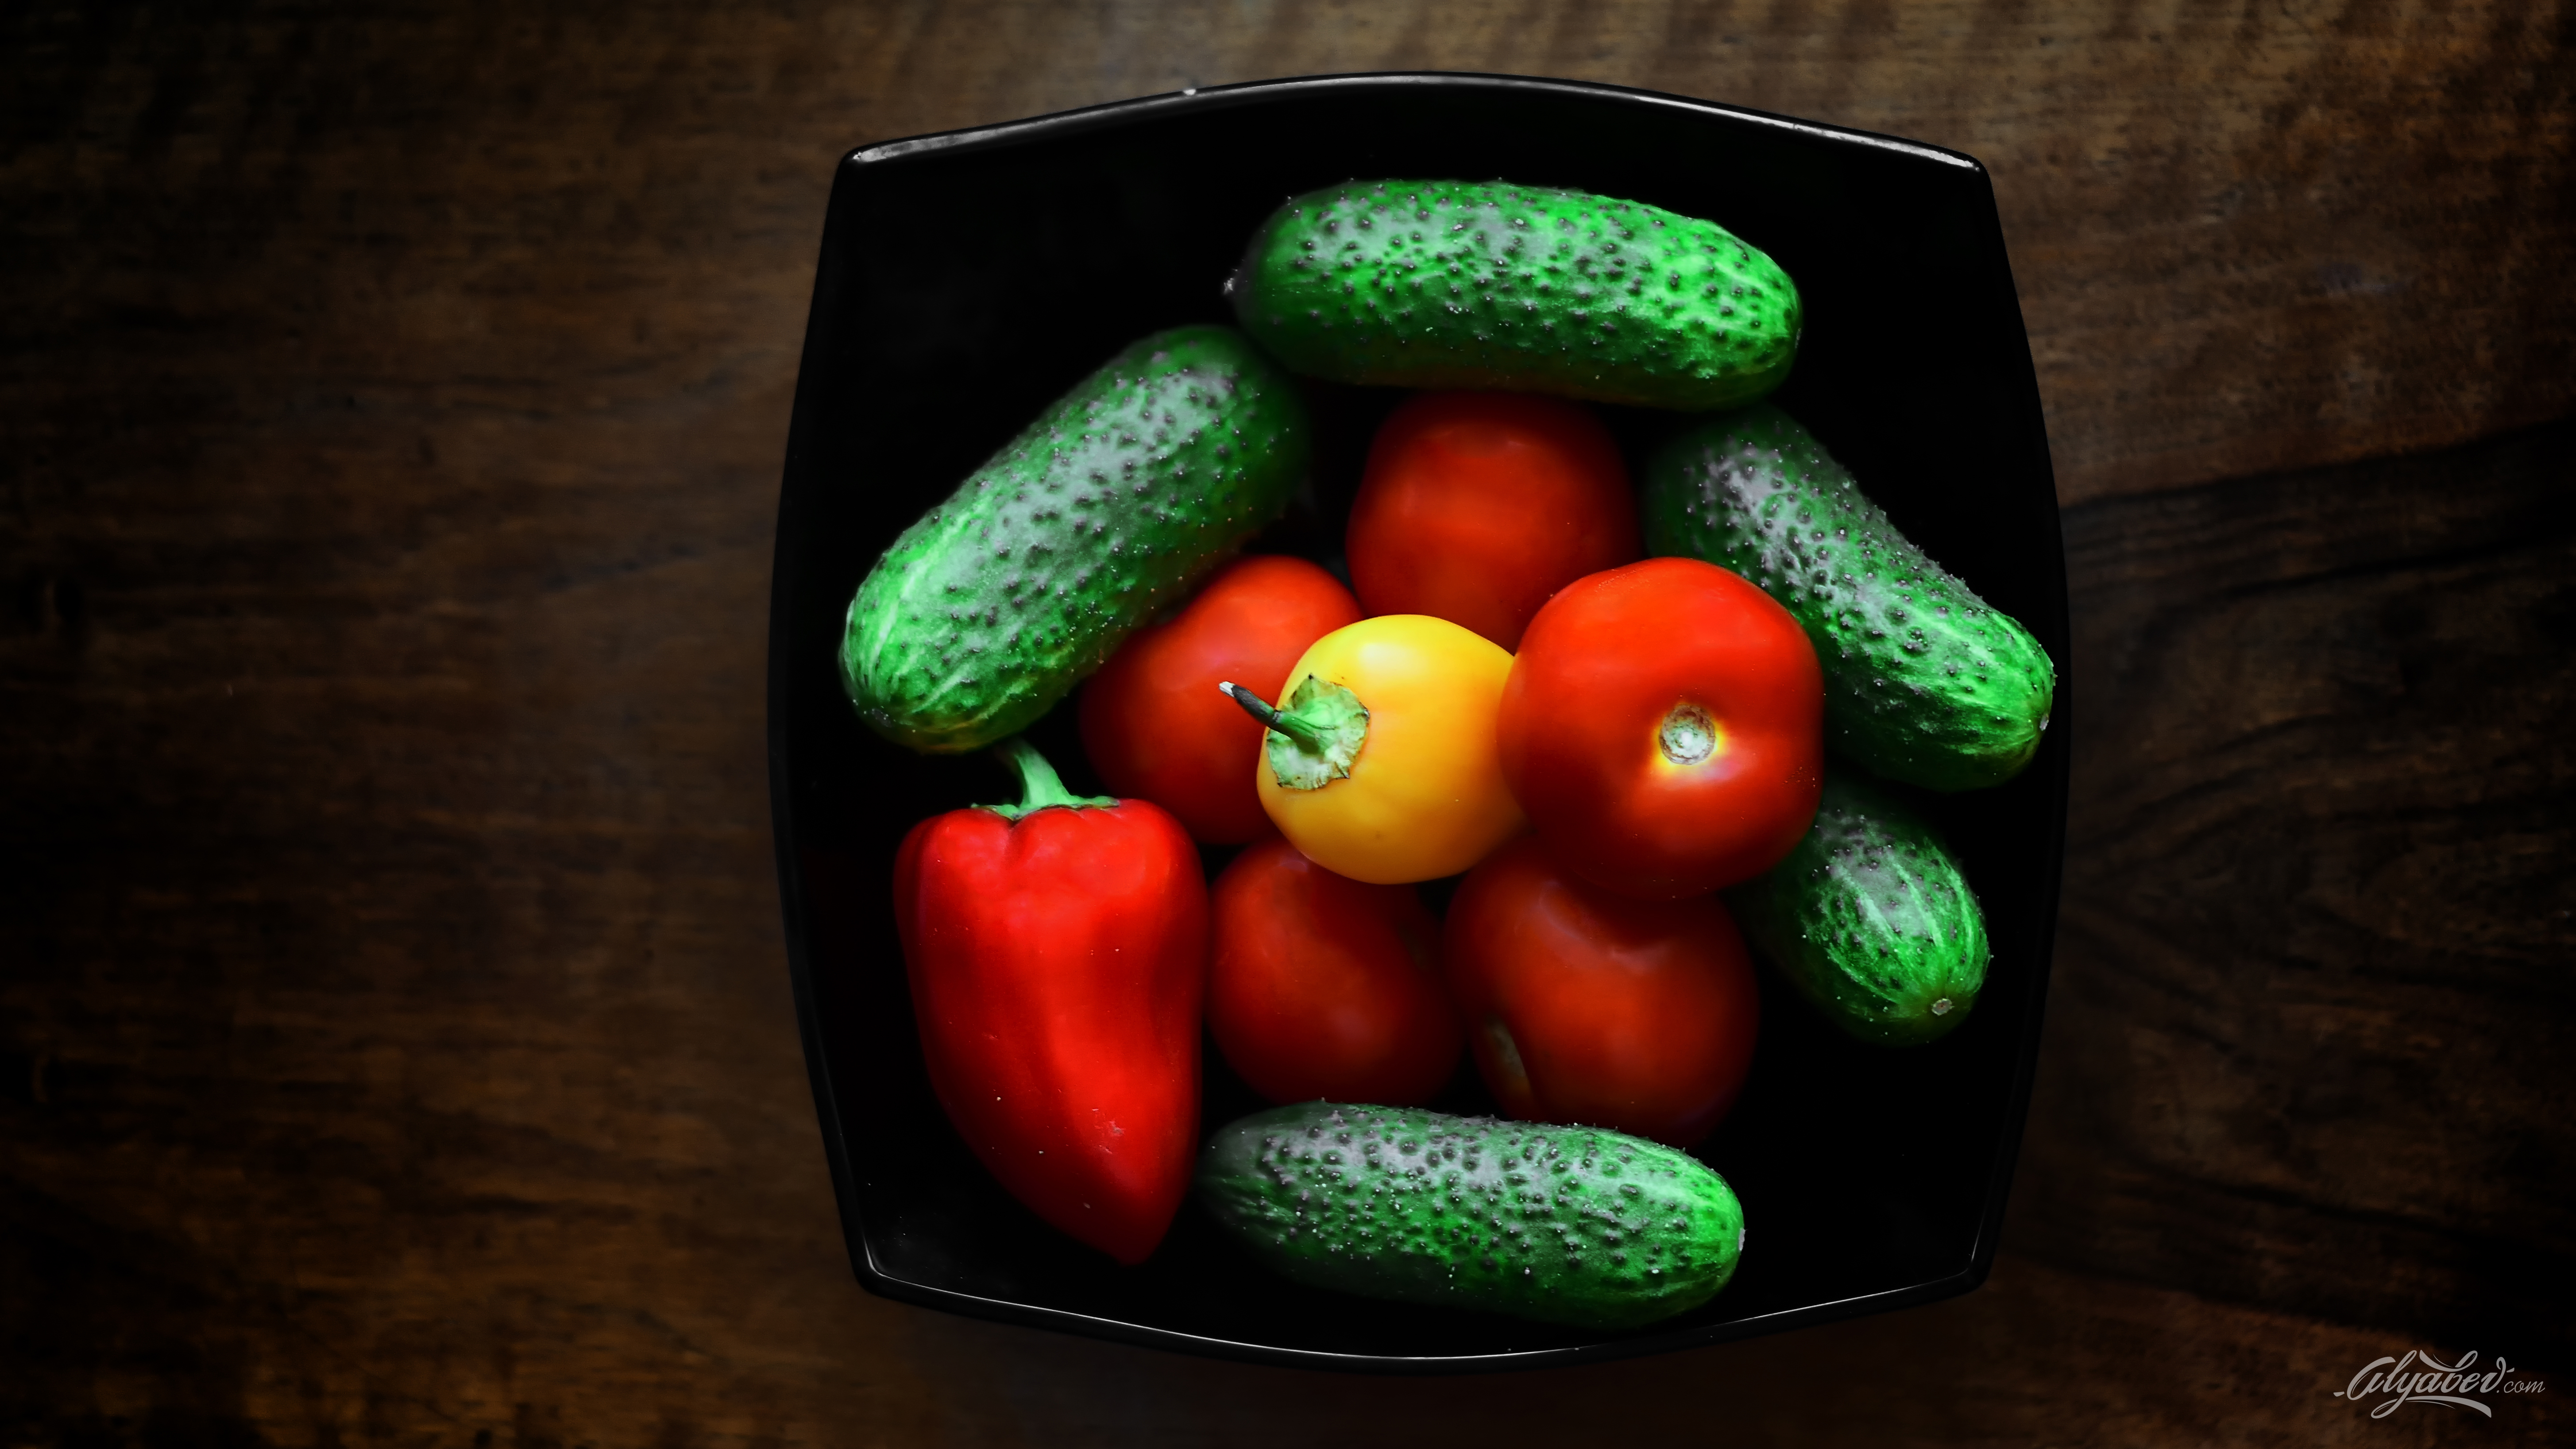 389196 免費下載壁紙 食物, 果蔬, 辣椒, 泡菜, 红色, 静物, 番茄, 水果 屏保和圖片